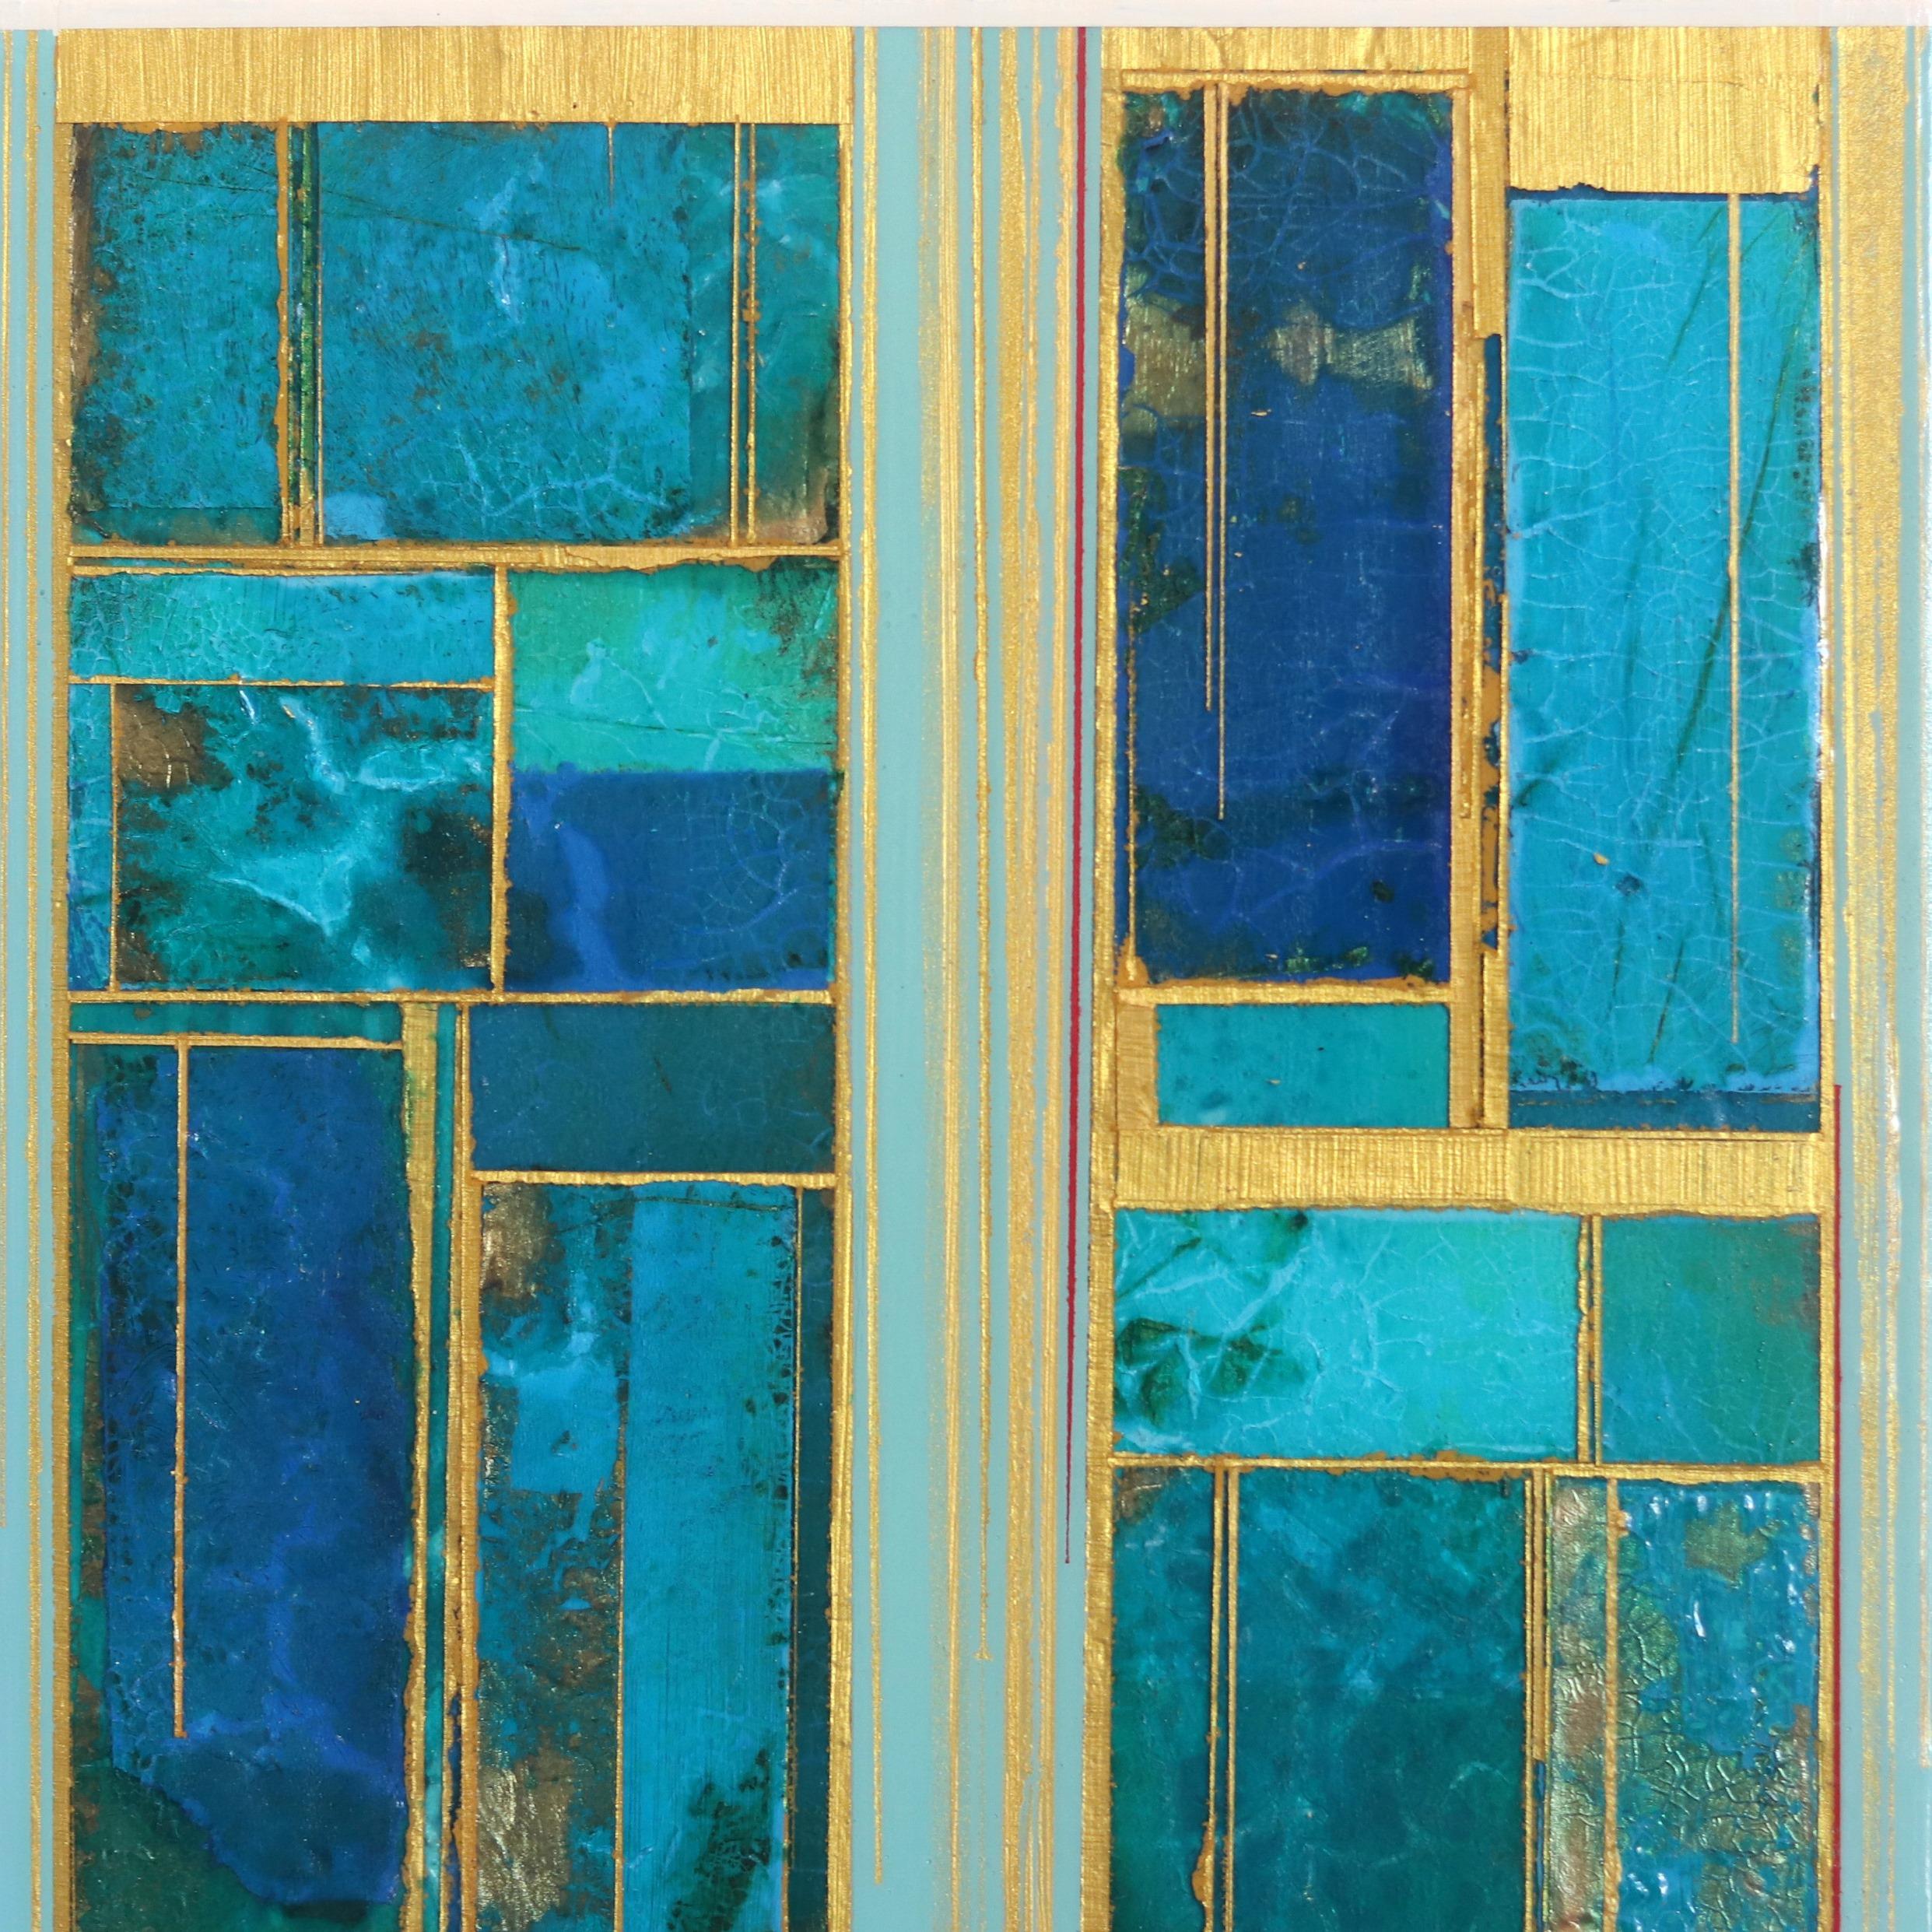 Alexander Eulerts Original-Mixed-Media-Gemälde auf Holzplatten sind abstrakte Projektionen von Welten, in denen divergierende Kräfte zu harmonischen geometrischen Interaktionen verschmelzen. Er schöpft seine Inspiration aus einer lebenslangen